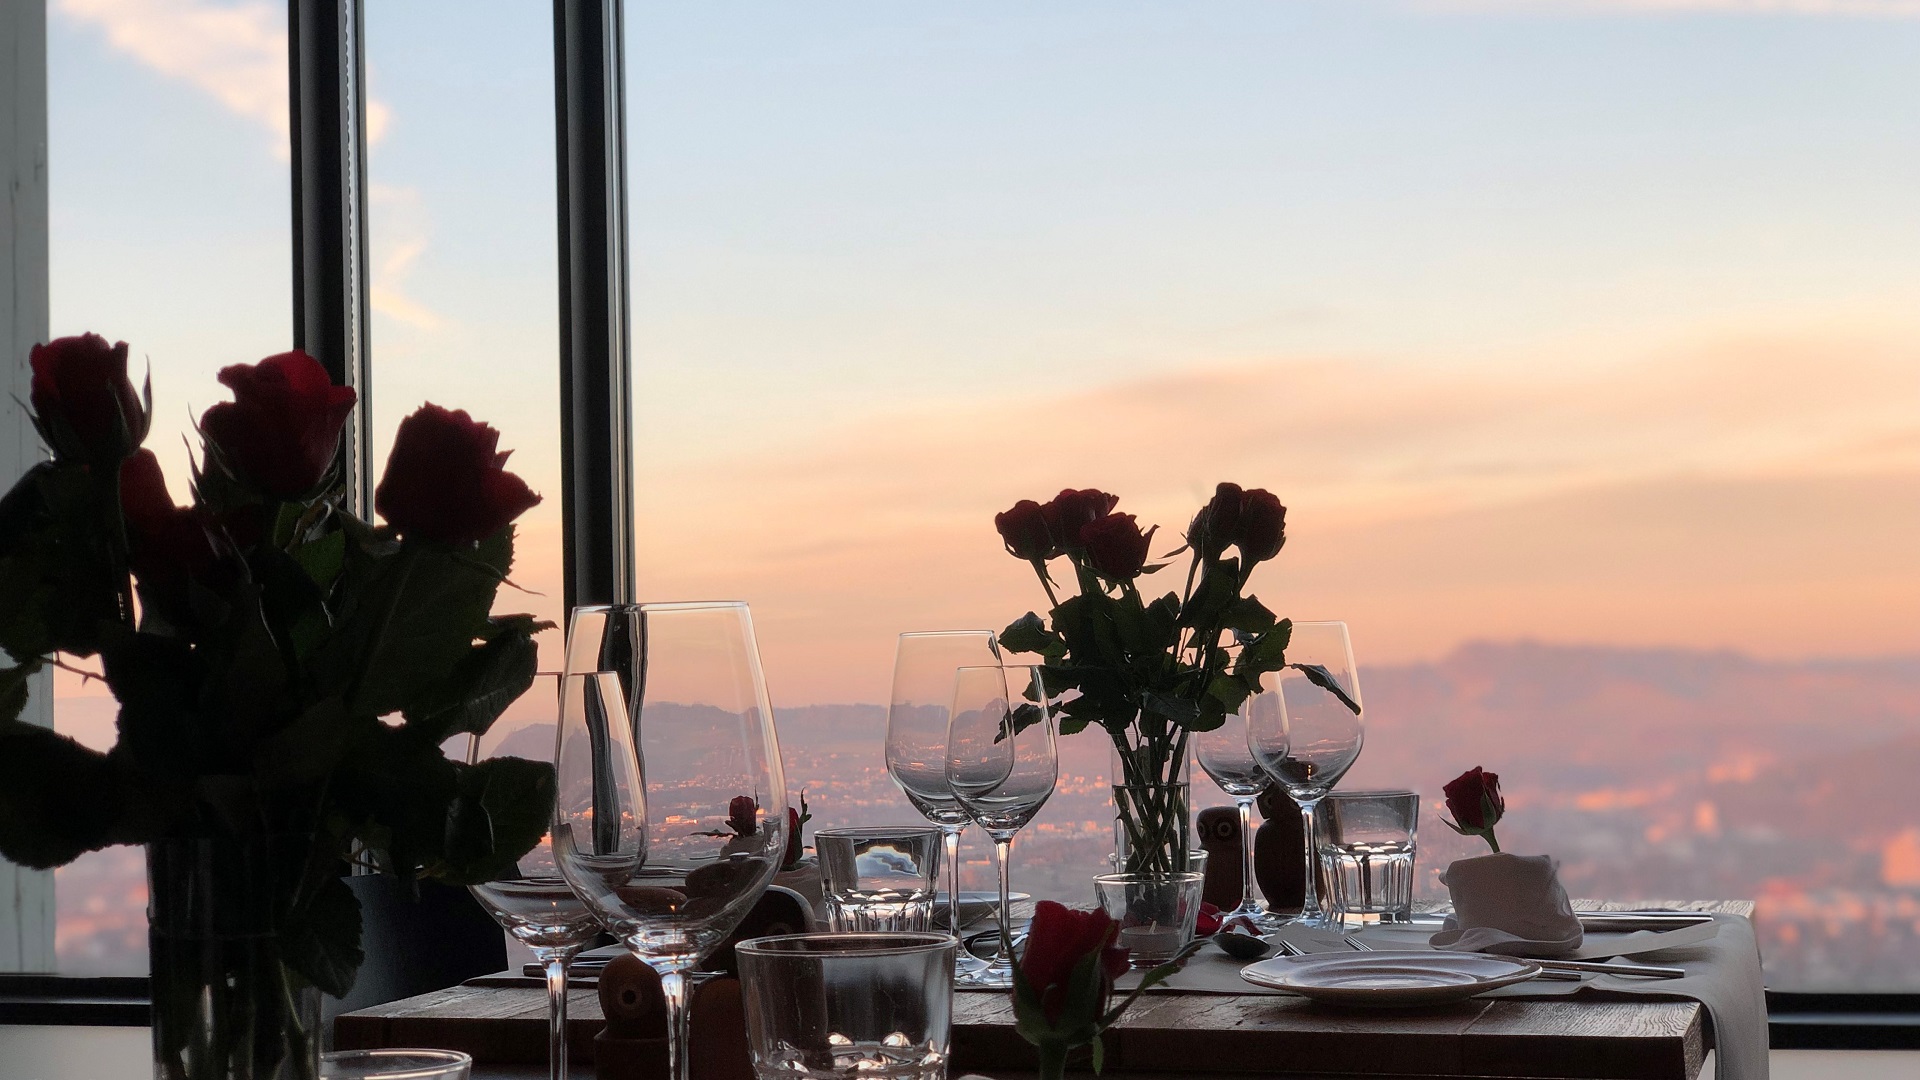 Une ambiance romantique dans le restaurant. Des roses rouges sont posées sur la table. 